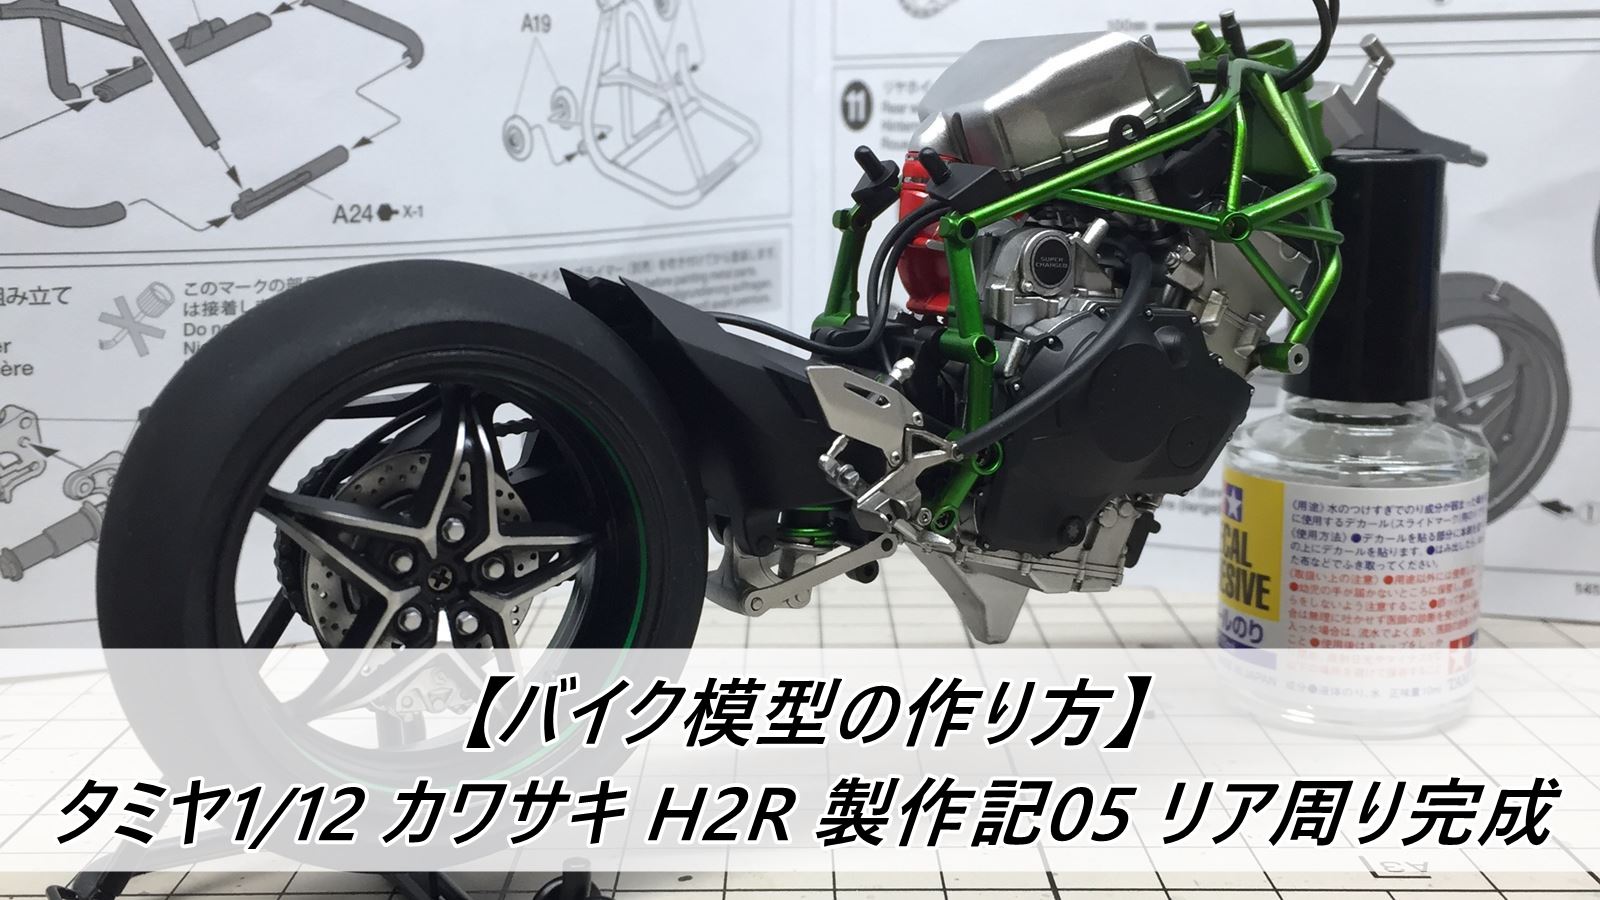 バイク模型の作り方 タミヤ1 12 カワサキ H2r 製作記05 リア周り完成 雑食プラモ備忘ログ